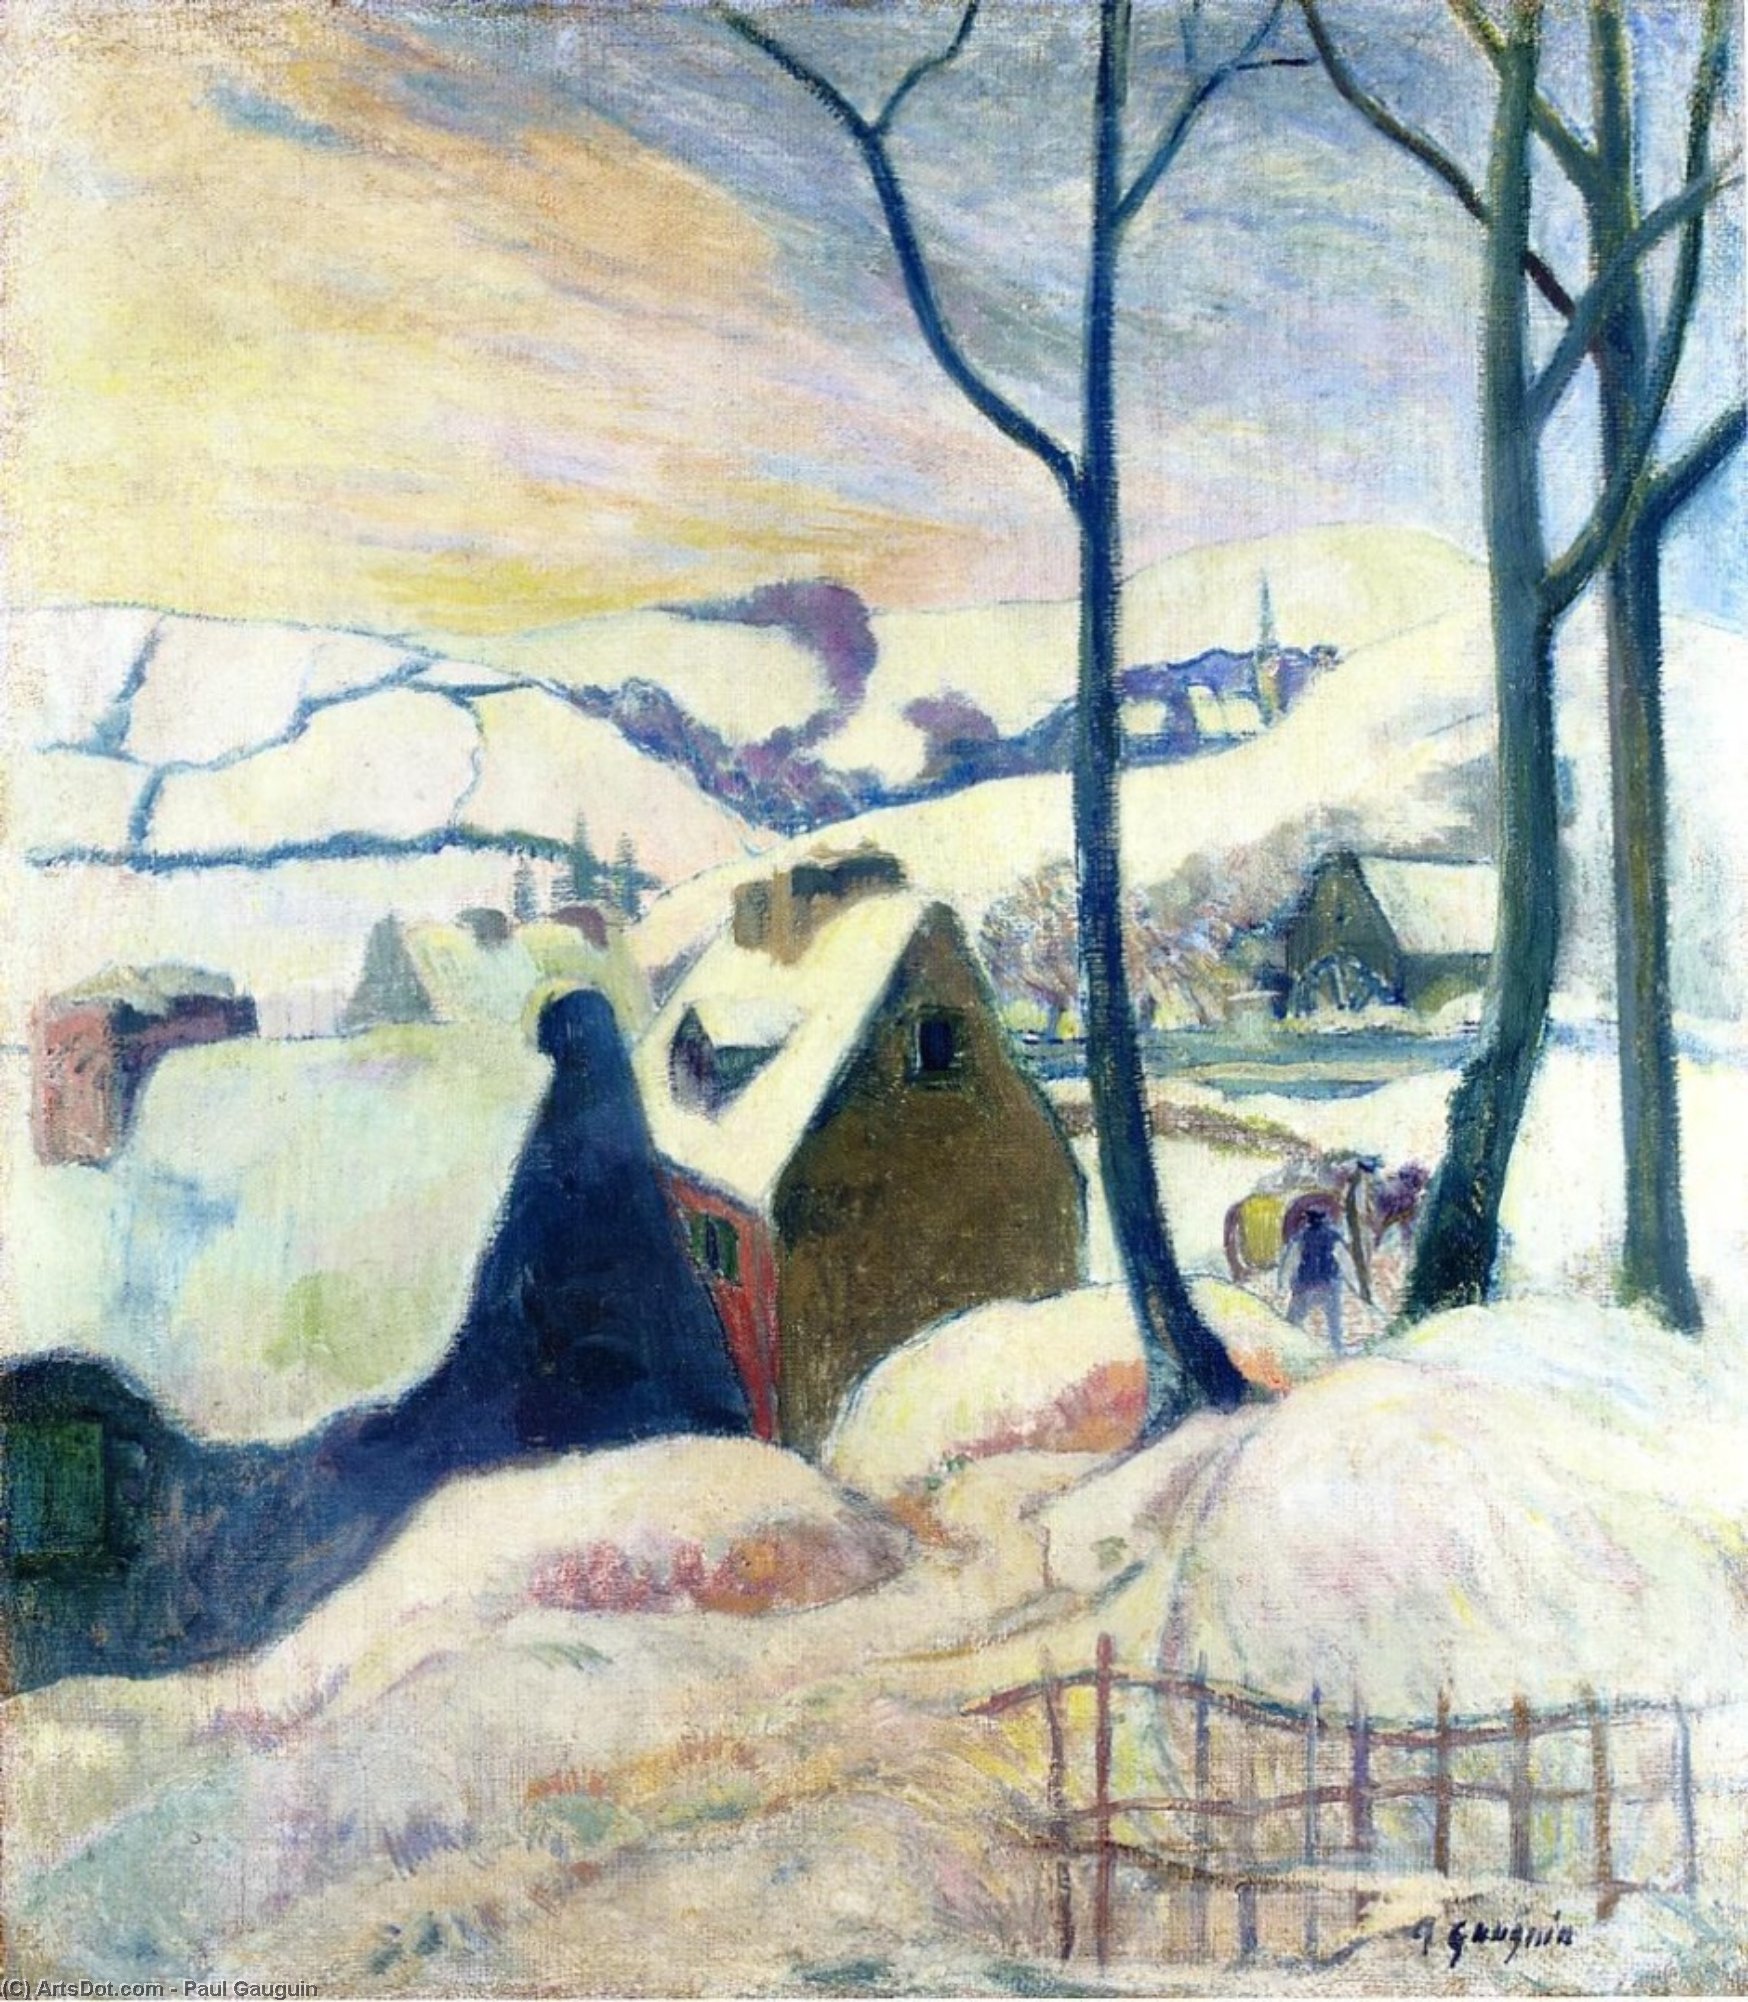 WikiOO.org - Encyclopedia of Fine Arts - Festés, Grafika Paul Gauguin - Village in the snow